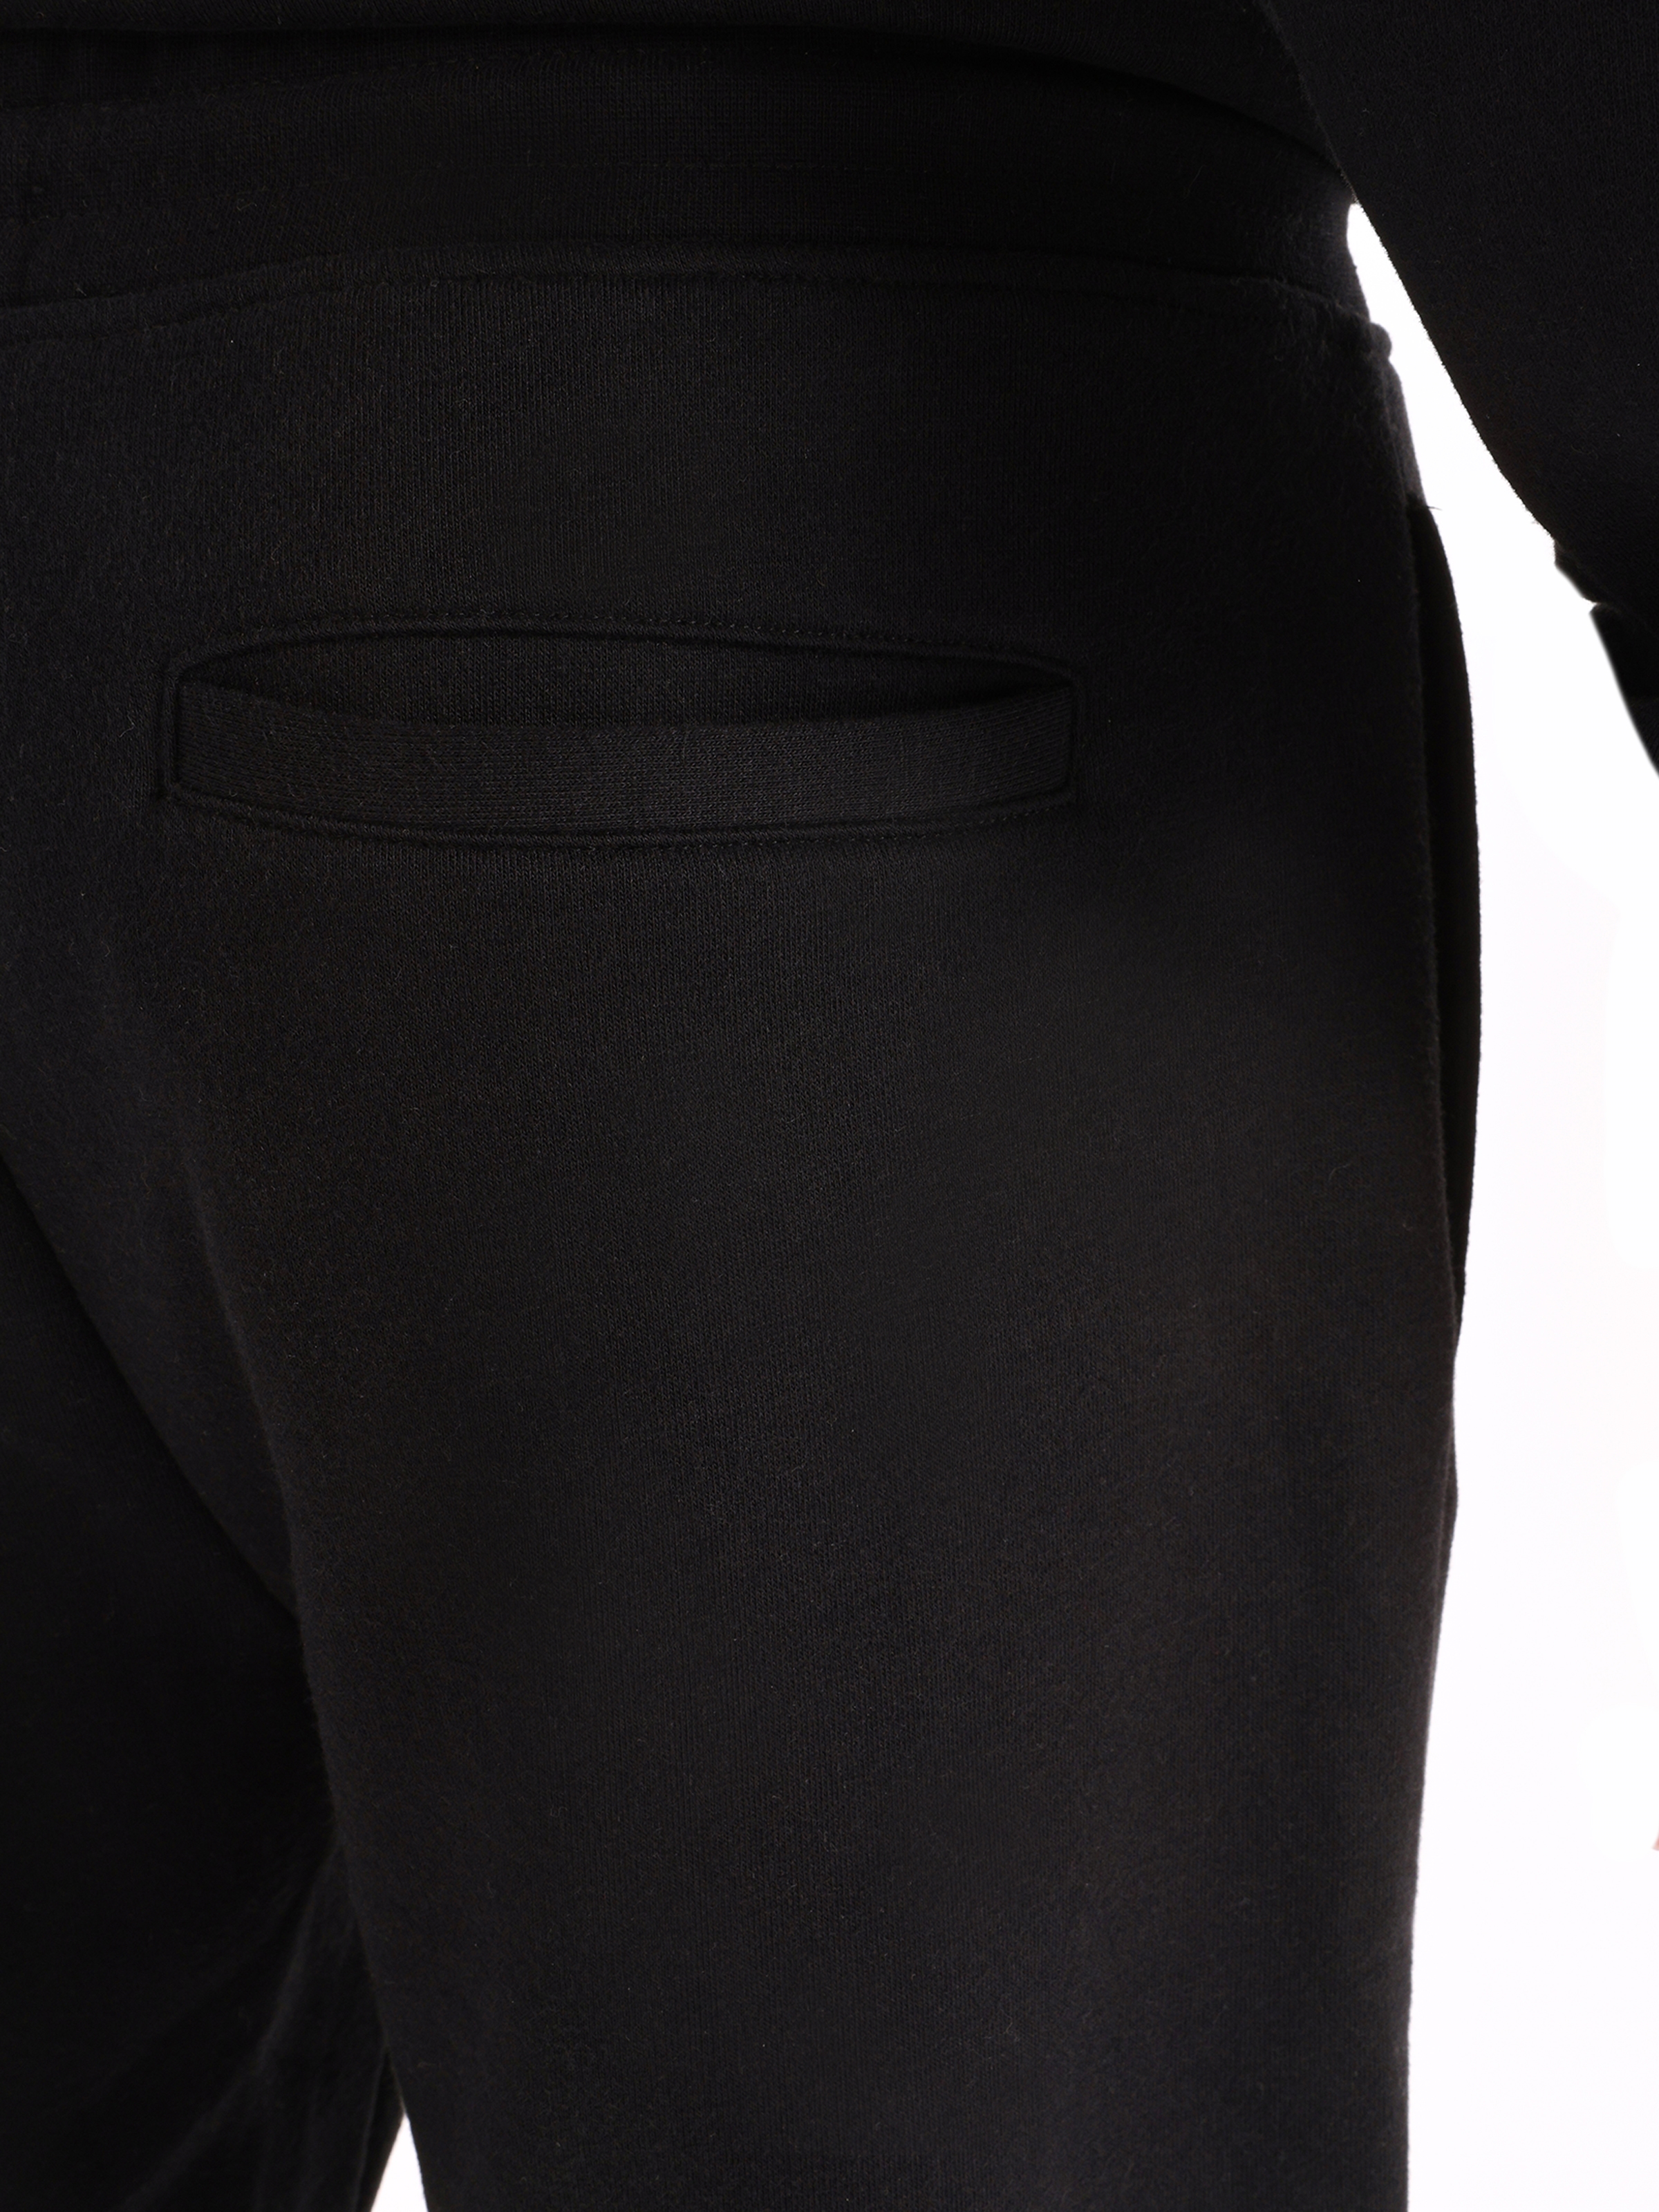 Afișați detalii pentru Pantaloni De Trening De Barbati Negru Slim Fit  